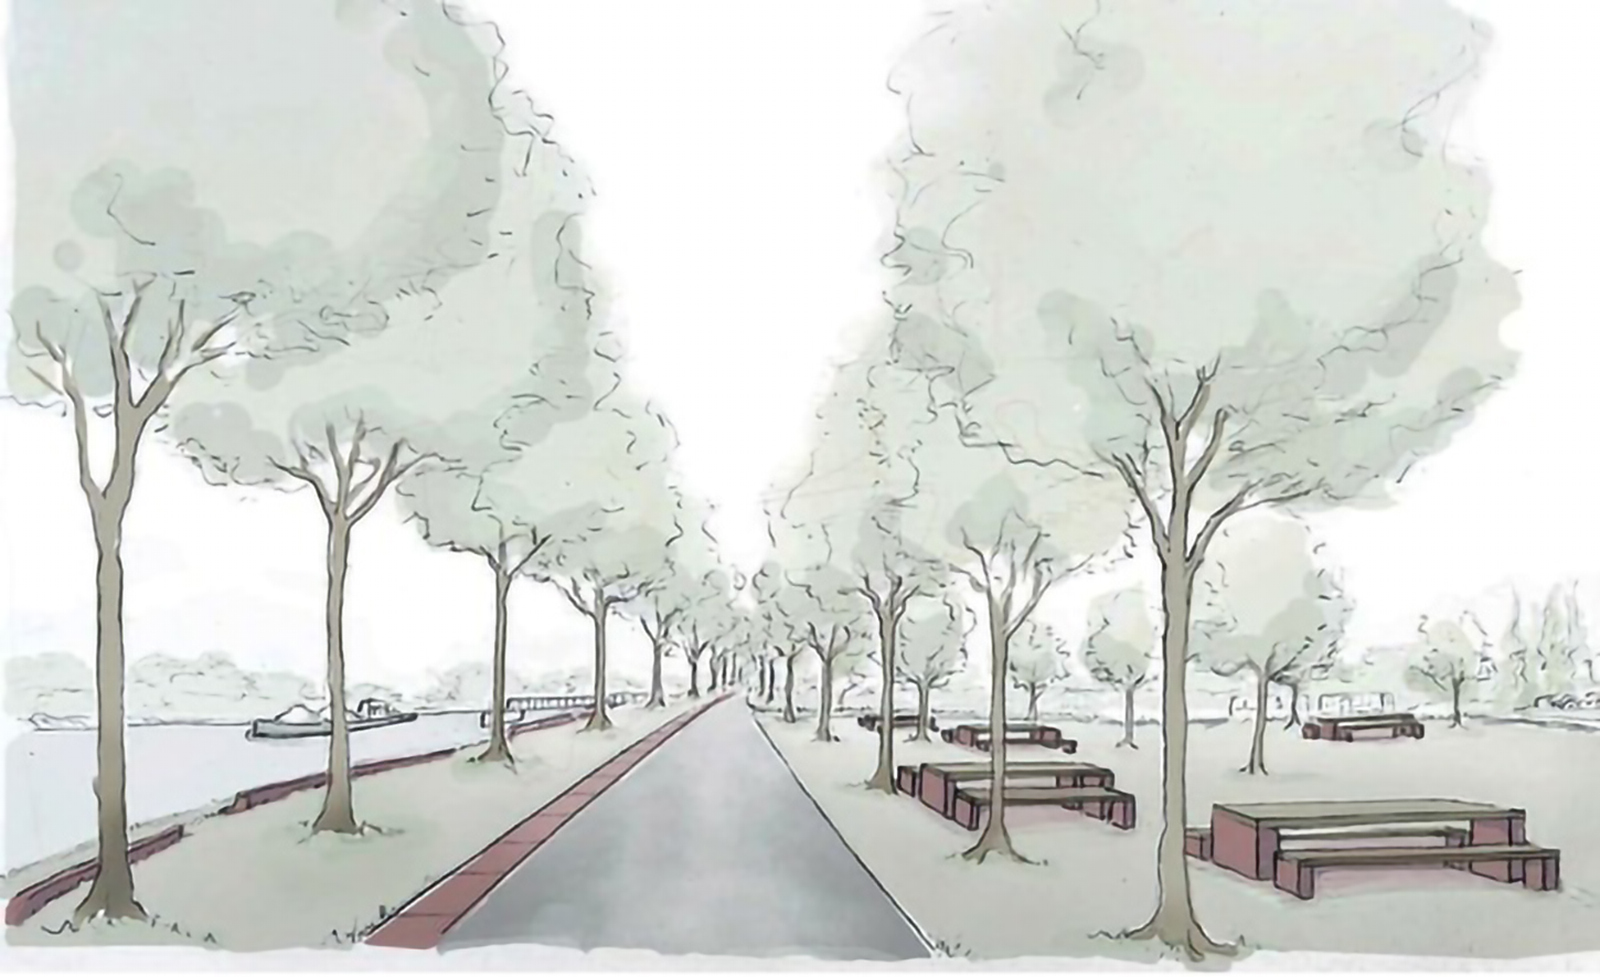 Zeichnung neuer Uferbereich an der Rheinpromenade in Plittersdorf. Bäume säumen einen Weg und Sitzbänke